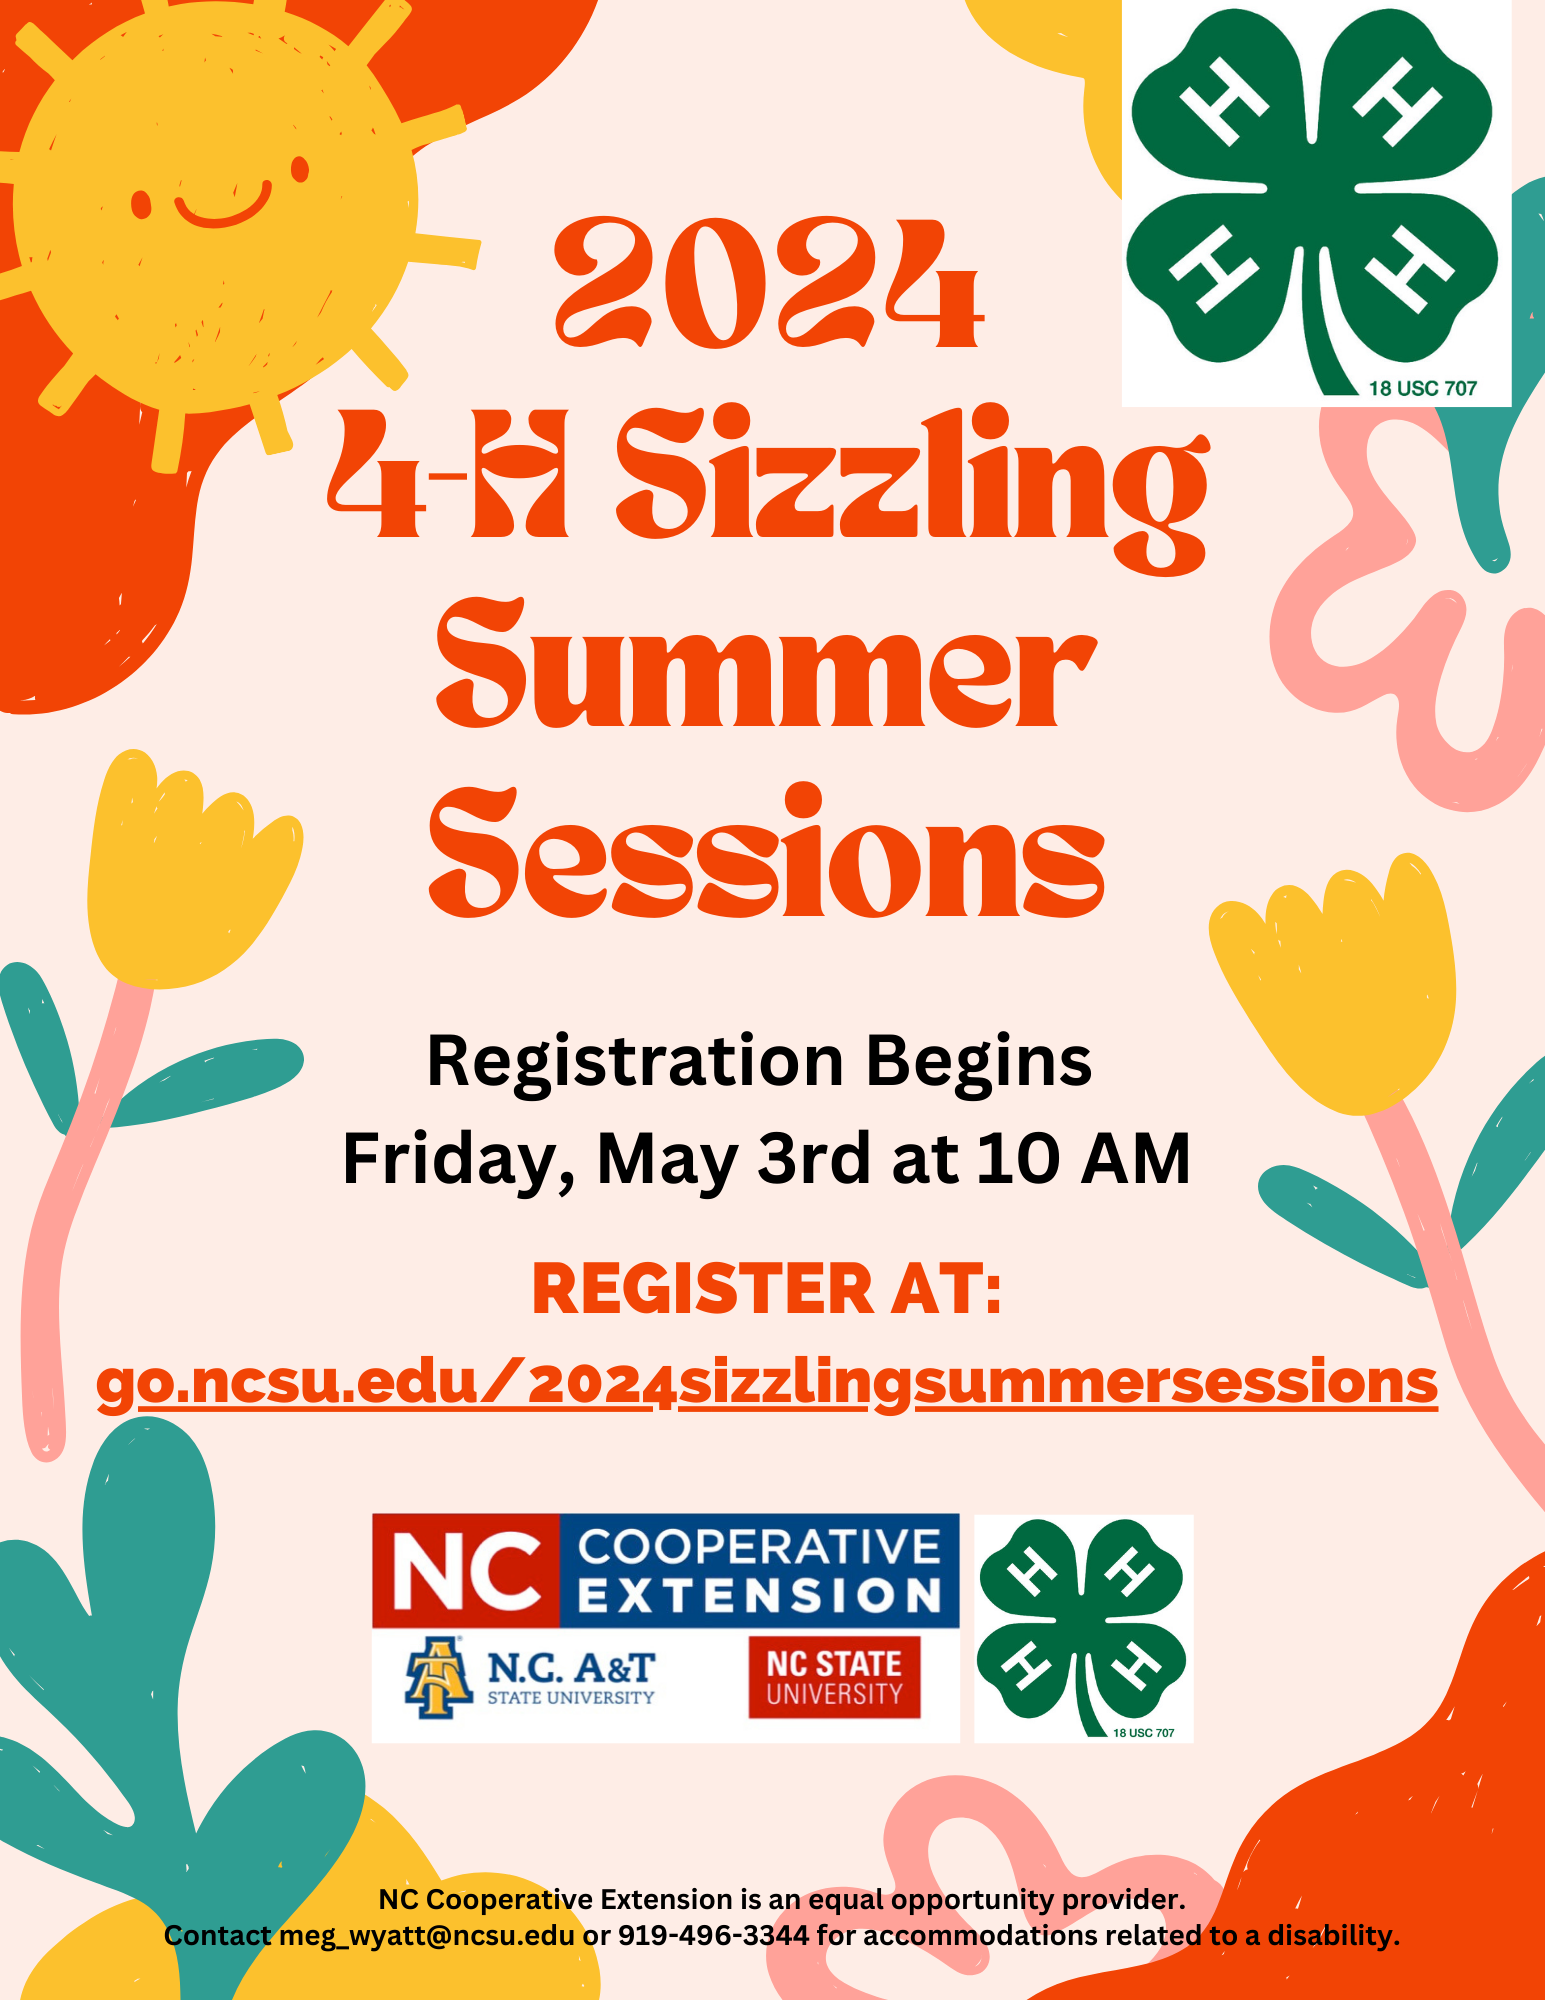 2024 4-H Sizzling Summer Sessions flier-Registration link and information